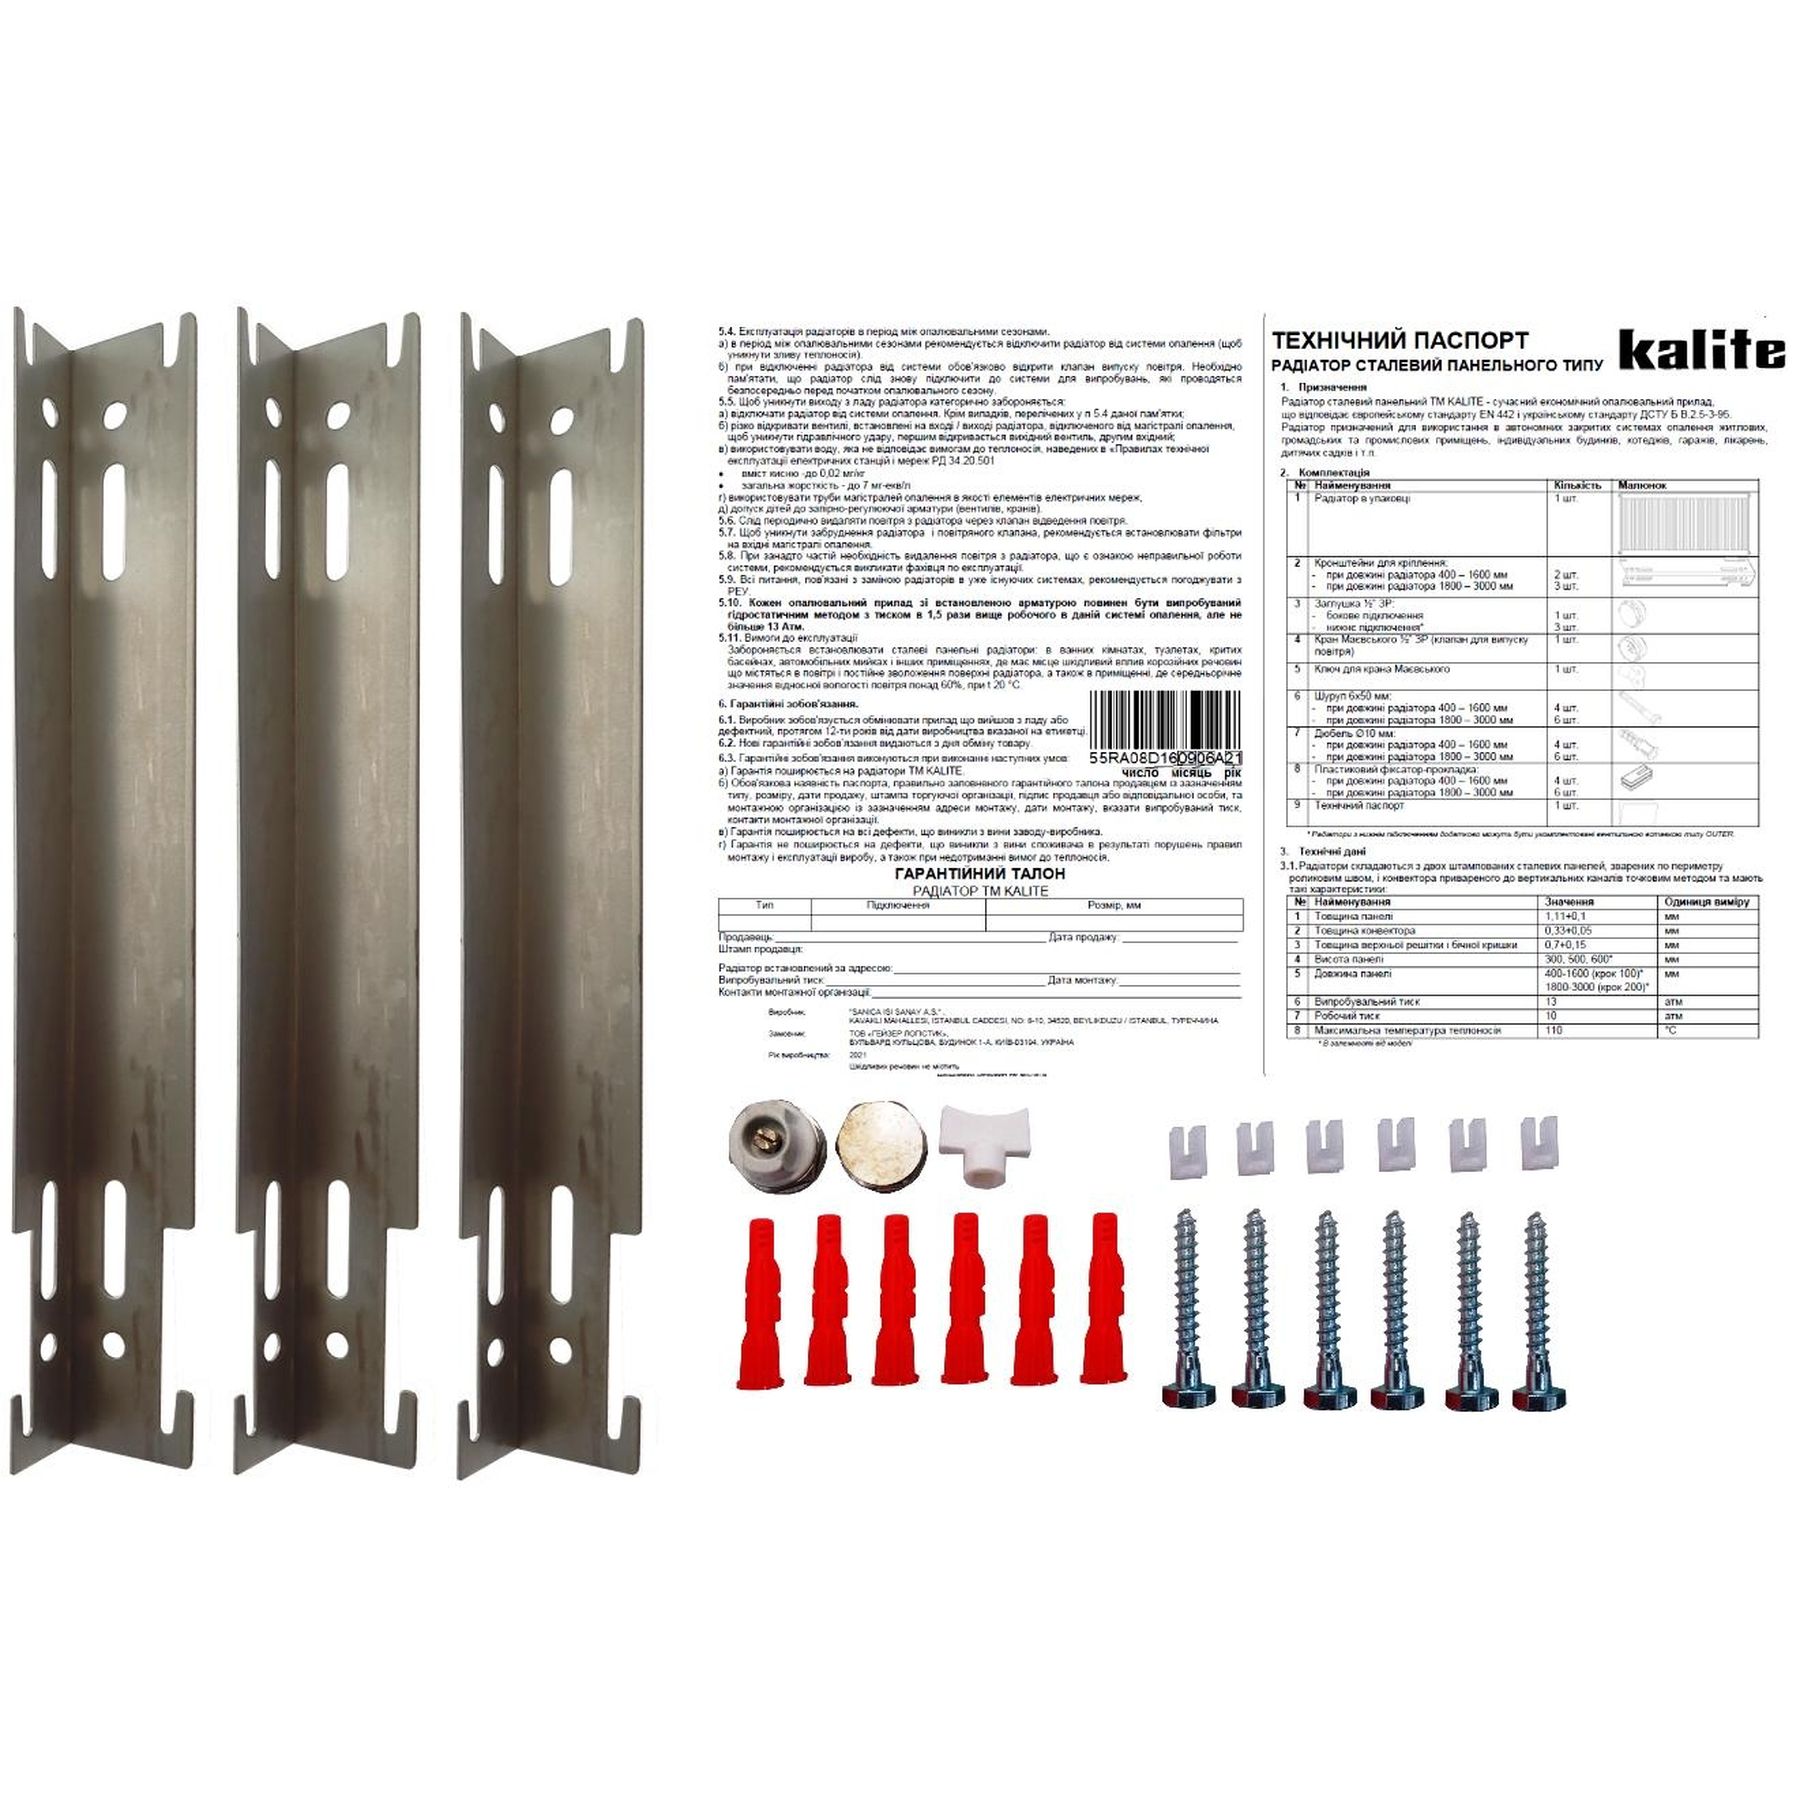 Радиатор для отопления Kalite 11 бок 500х2000 цена 4980 грн - фотография 2